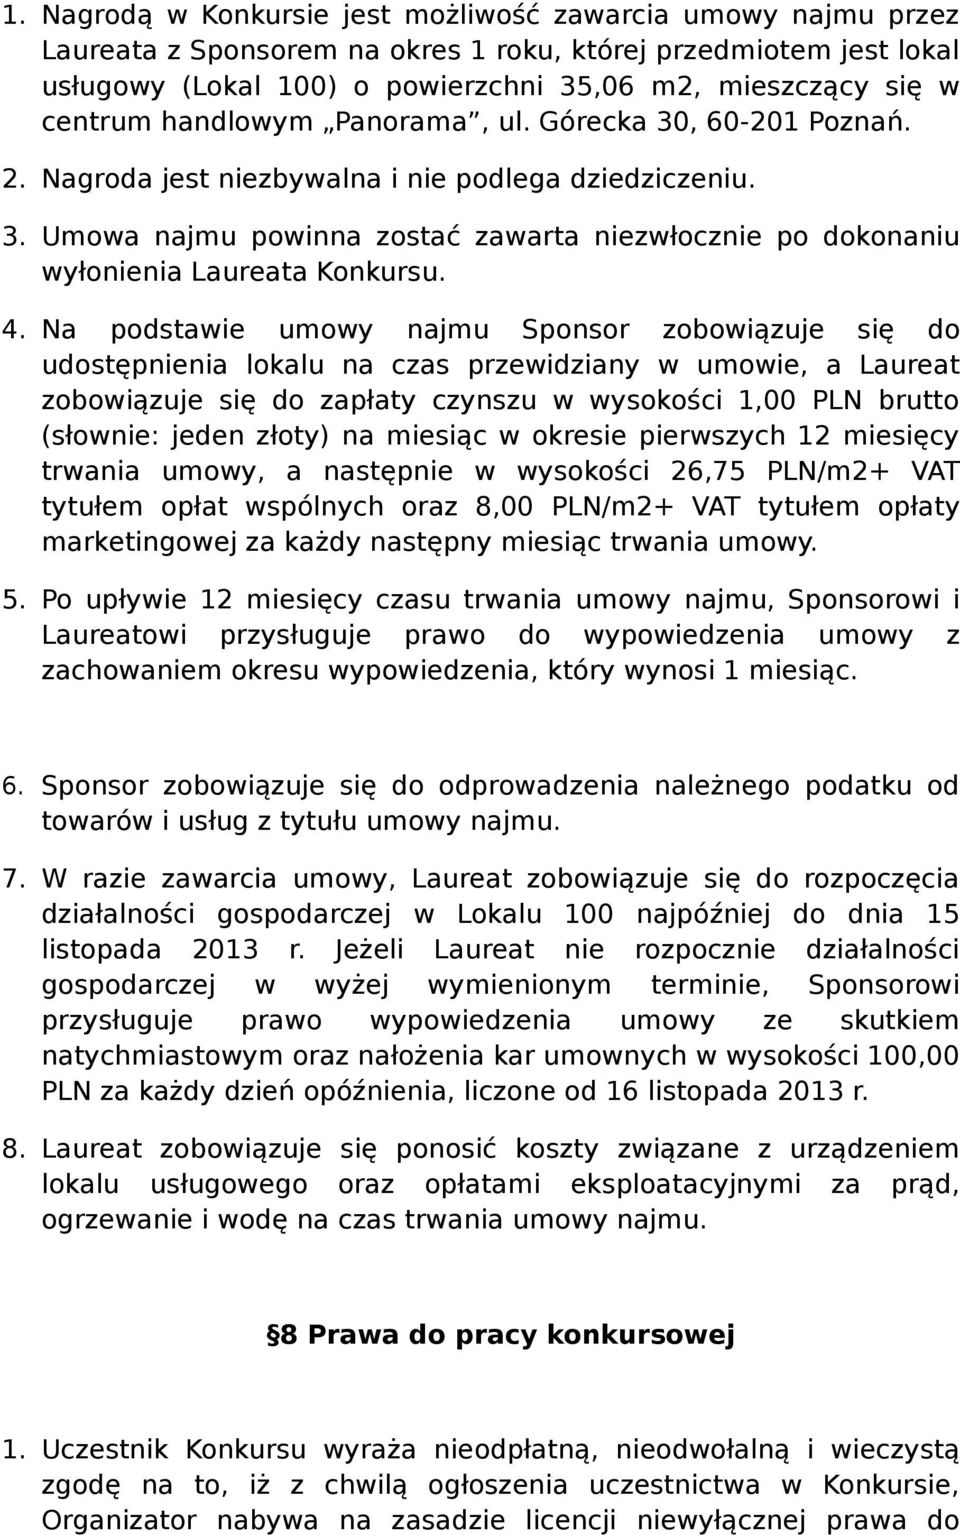 4. Na podstawie umowy najmu Sponsor zobowiązuje się do udostępnienia lokalu na czas przewidziany w umowie, a Laureat zobowiązuje się do zapłaty czynszu w wysokości 1,00 PLN brutto (słownie: jeden